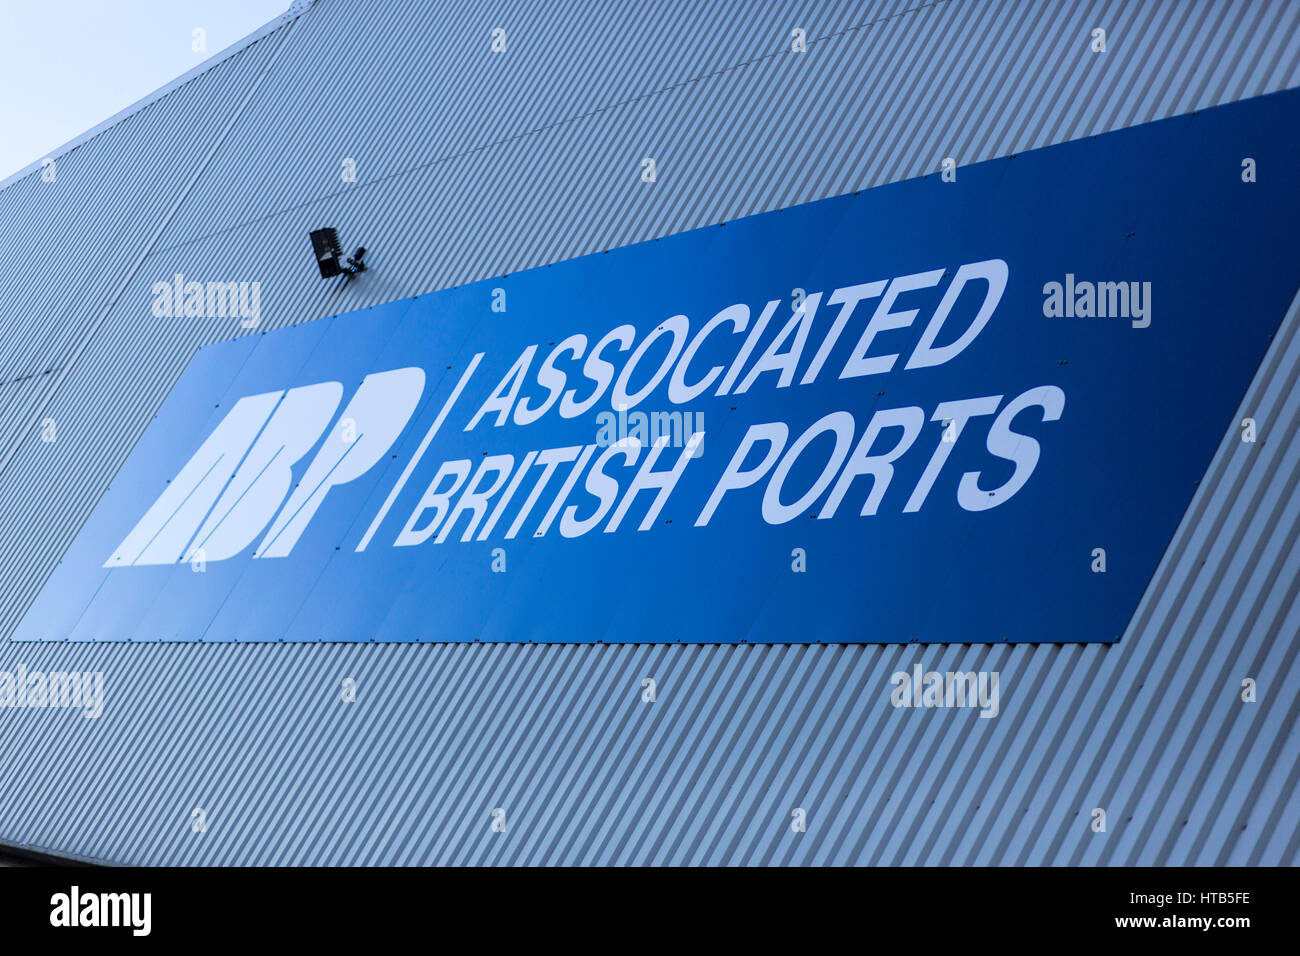 Damit verbundenen britischen Häfen Beschilderung am Hafen von Garston. Stockfoto